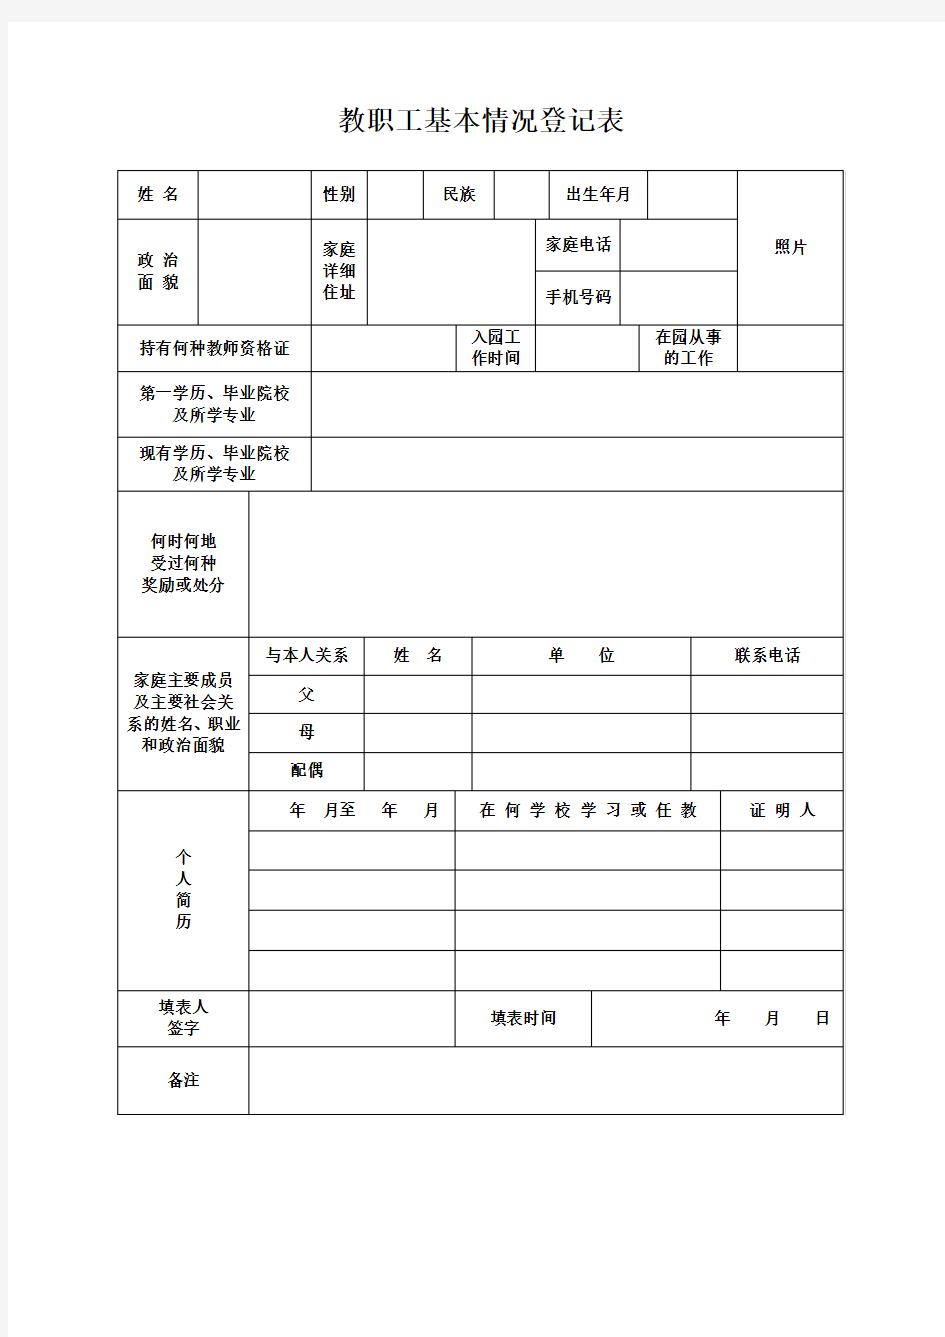 【幼儿园行政管理】教职工基本情况登记表